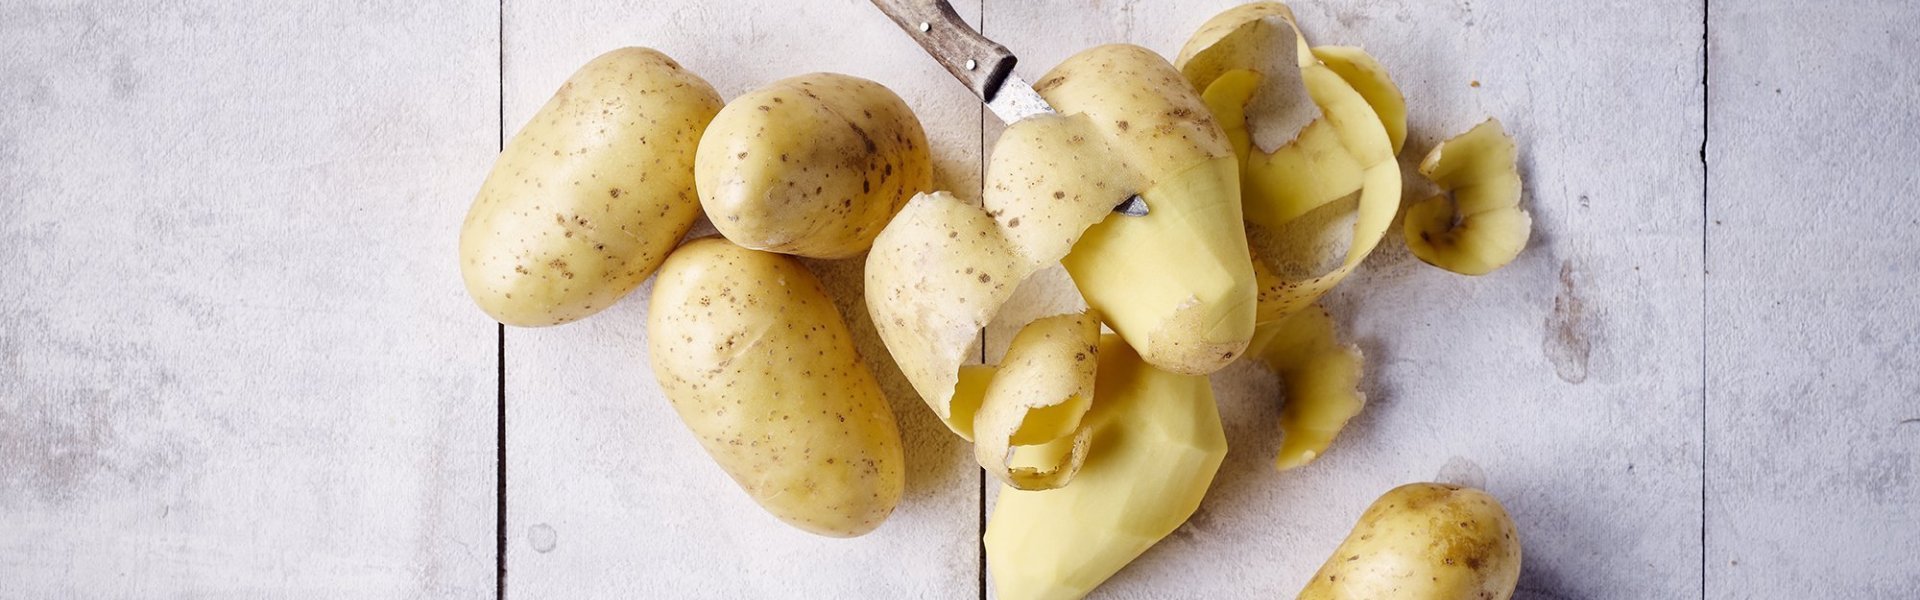 Meestal Postbode Productie Aardappelen koken: dat doe je zo | Lekker van bij ons